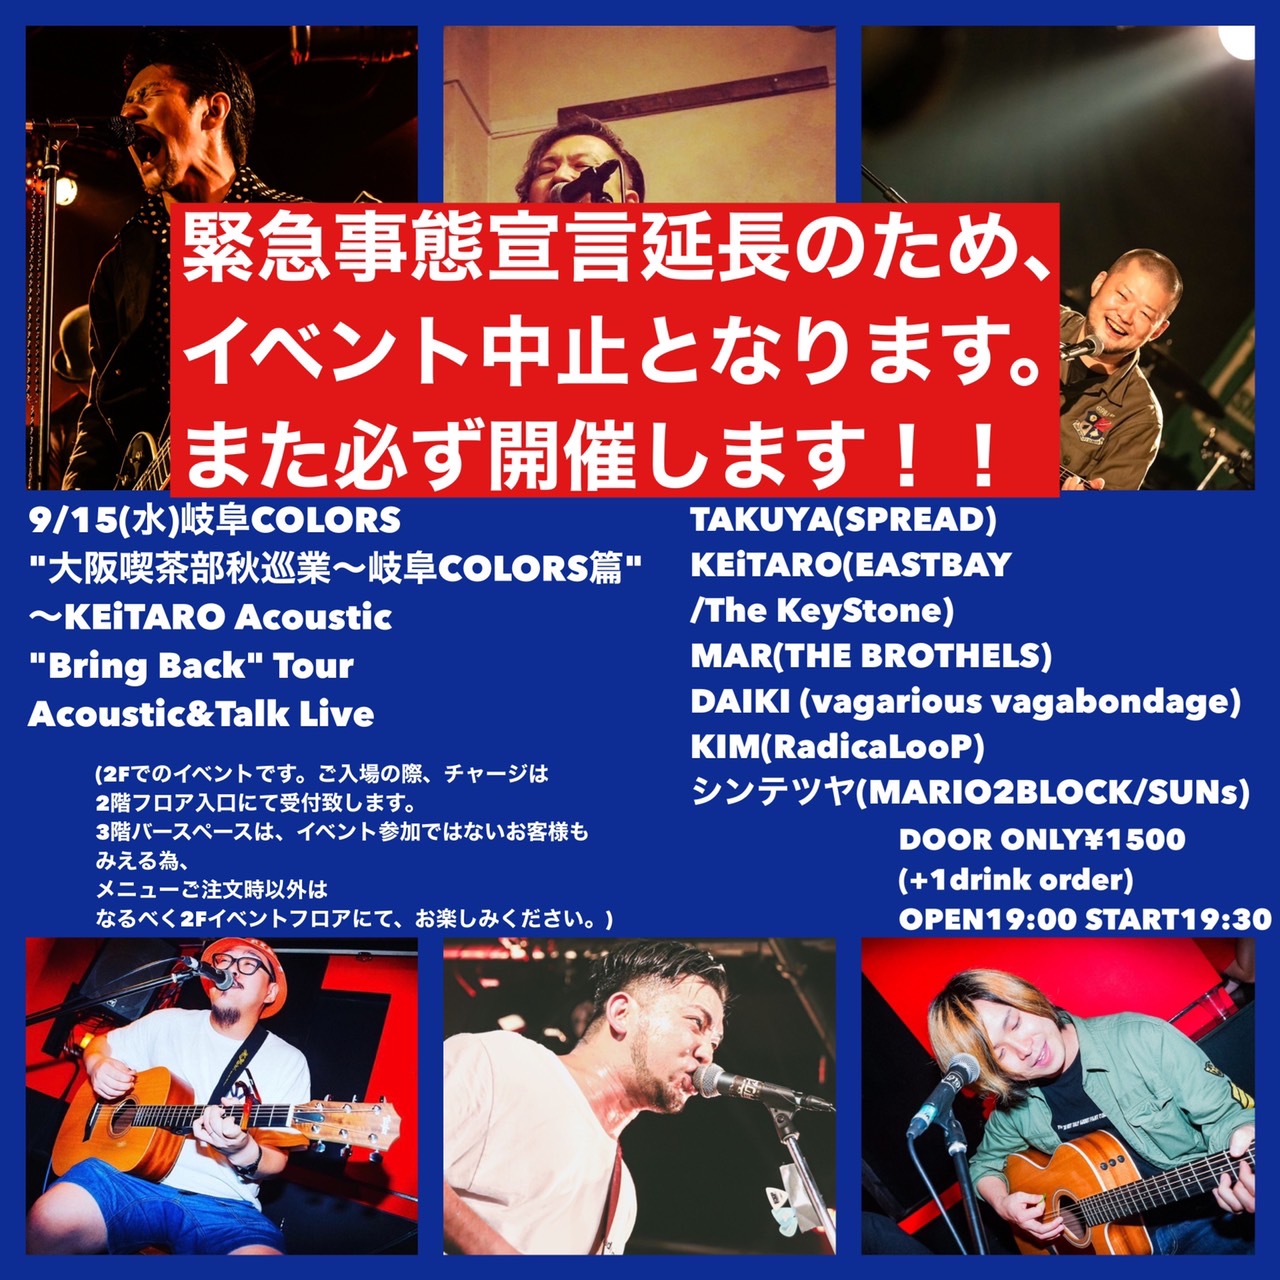 【中止】”大阪喫茶部秋巡業〜岐阜COLORS篇” 〜KEiTARO Acoustic “Bring Back” Tour Acoustic&Talk Liveの写真